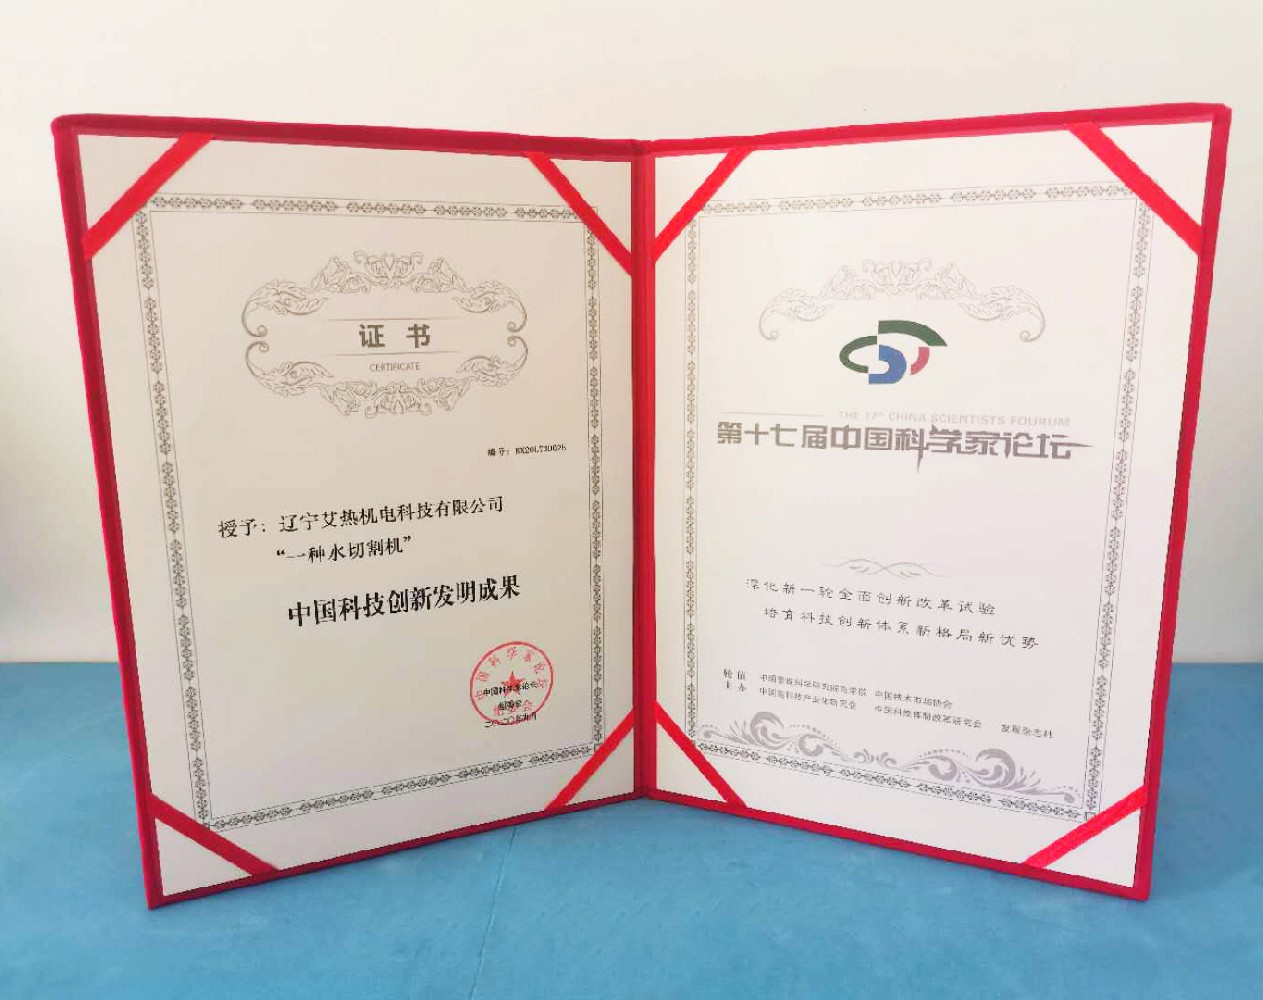 热烈祝贺艾热科技荣获”一种水切割机“中国科技创新发明成果奖